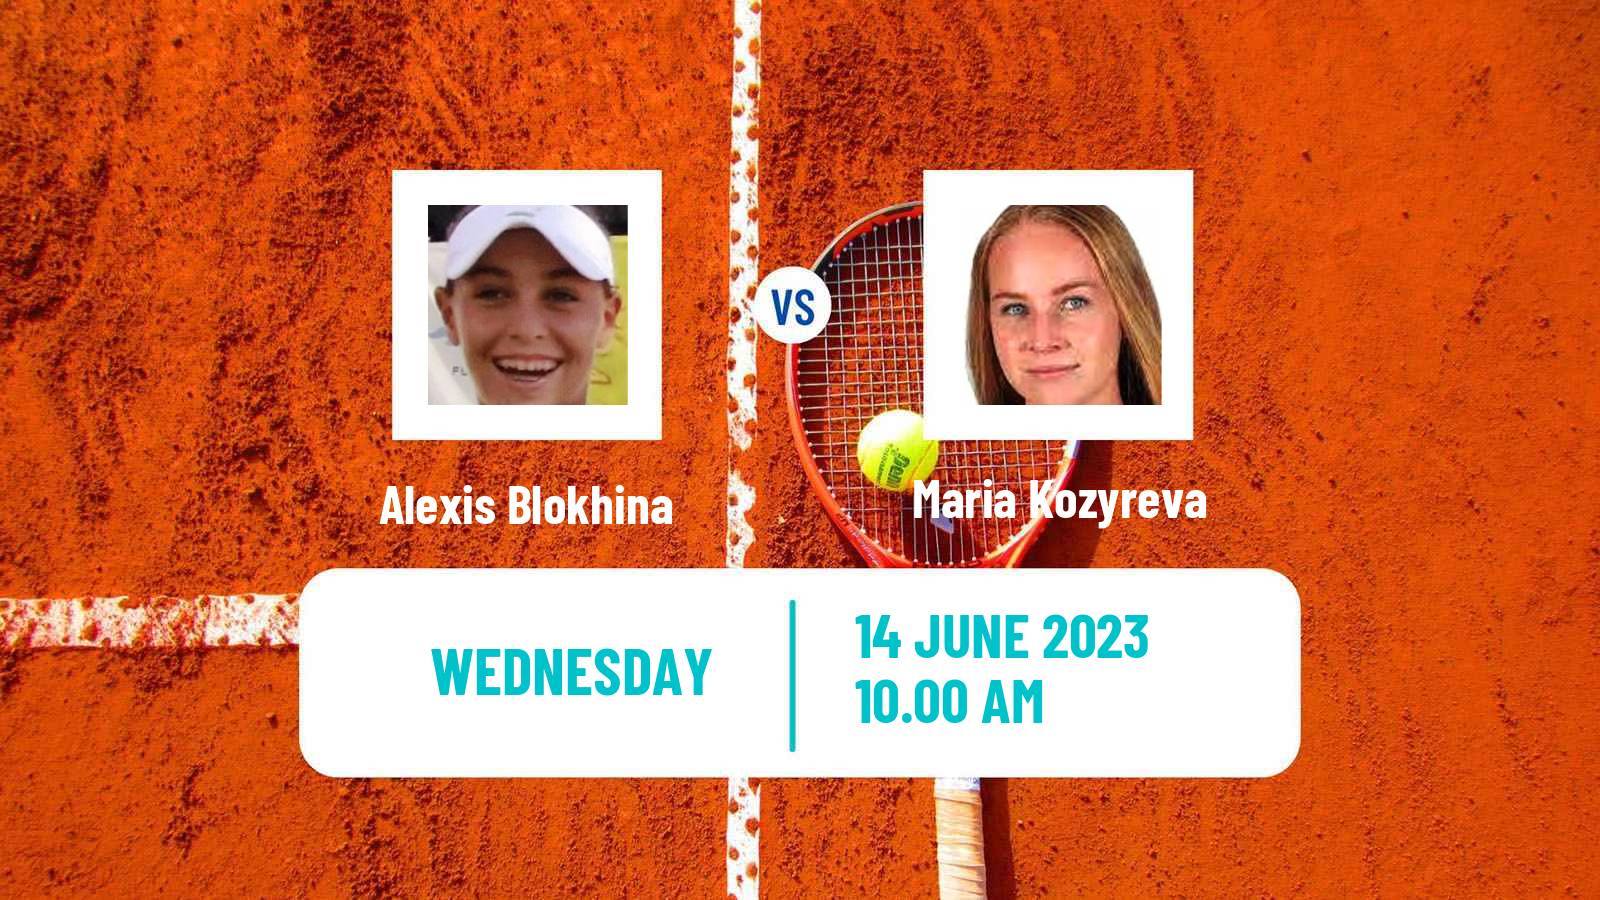 Tennis ITF W60 Sumter Sc Women Alexis Blokhina - Maria Kozyreva